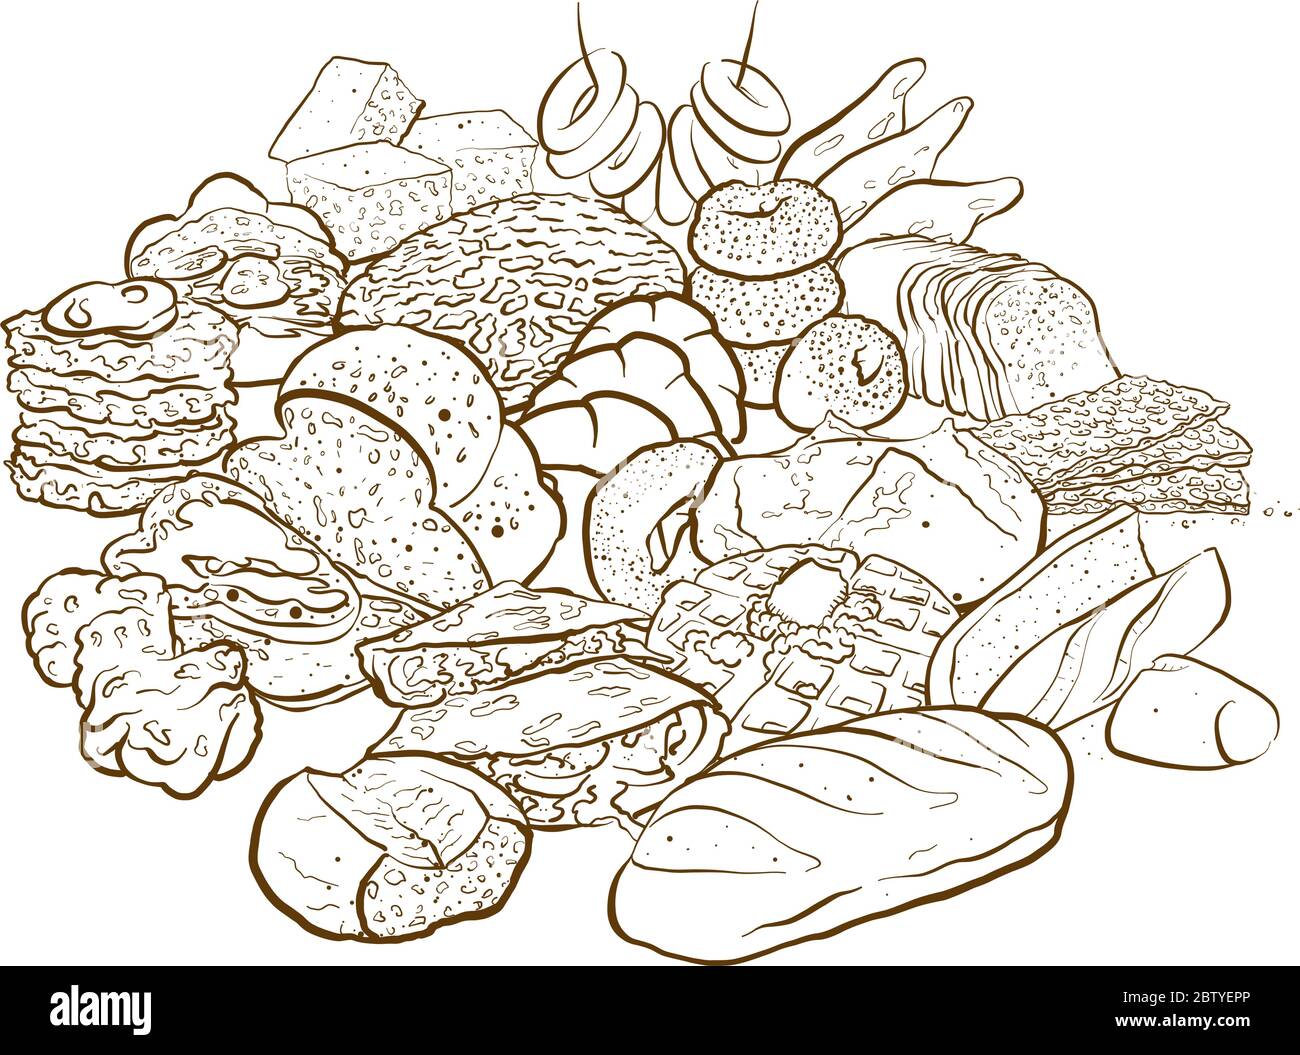 Version de contour d'un énorme ensemble de croquis colorés de produits de boulangerie avec de nombreux types de pain sur fond blanc Illustration de Vecteur